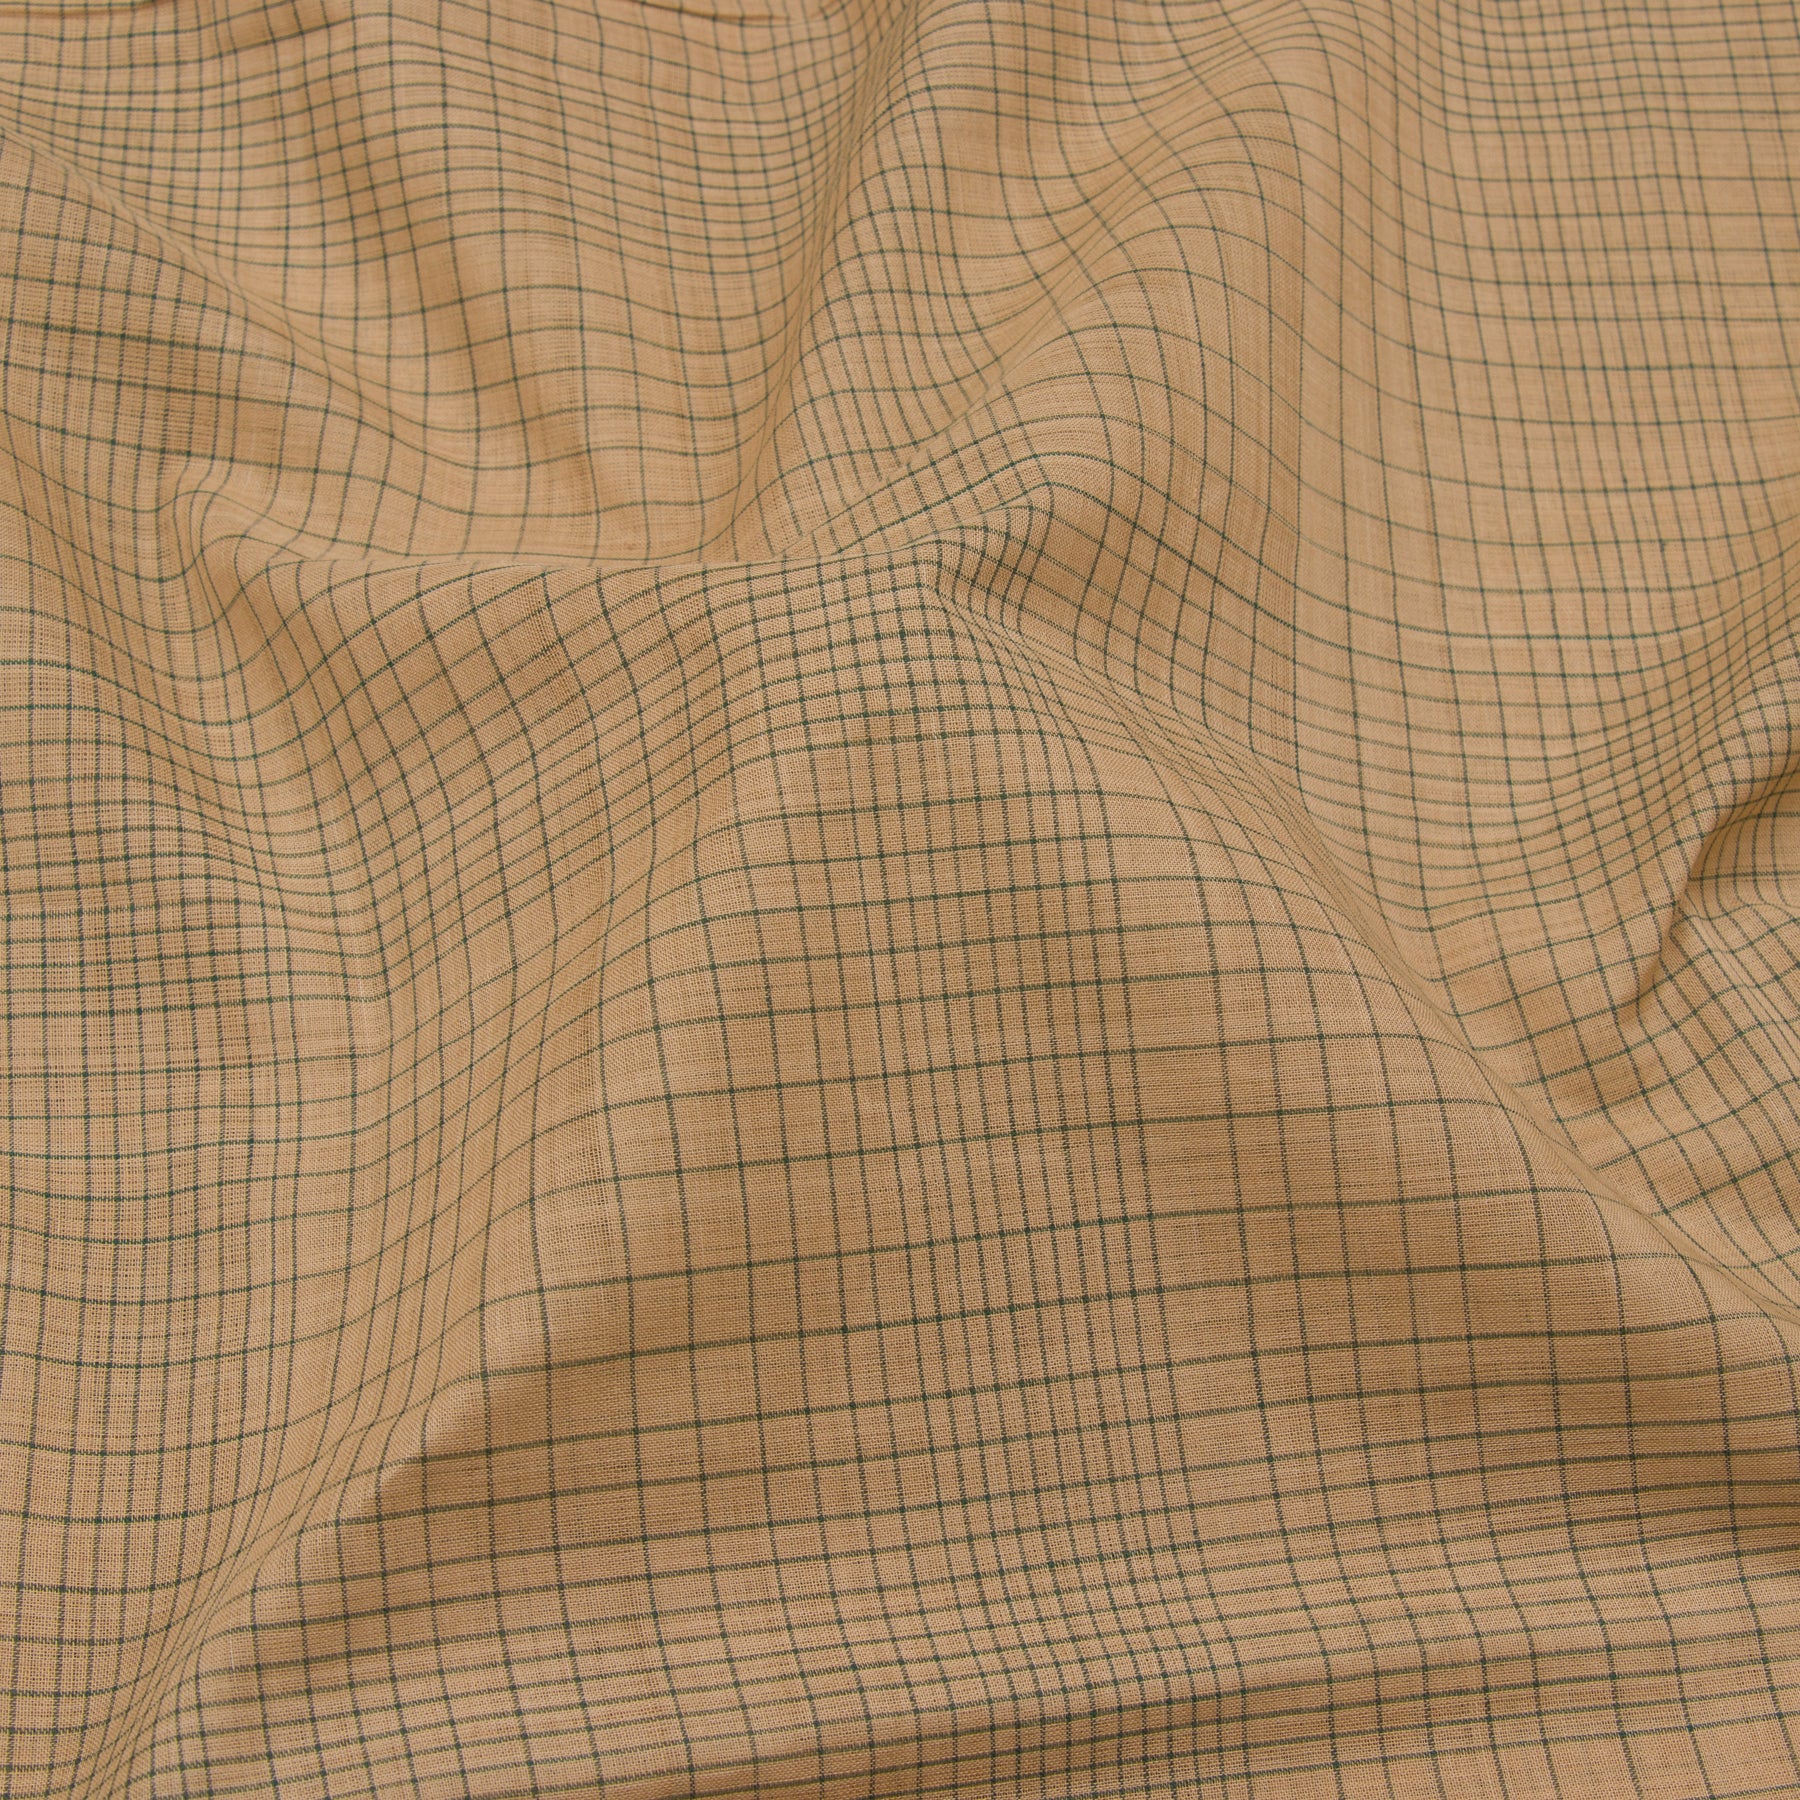 Kanakavalli Mangalgiri Cotton Sari 23-261-HS003-14887 - Fabric View